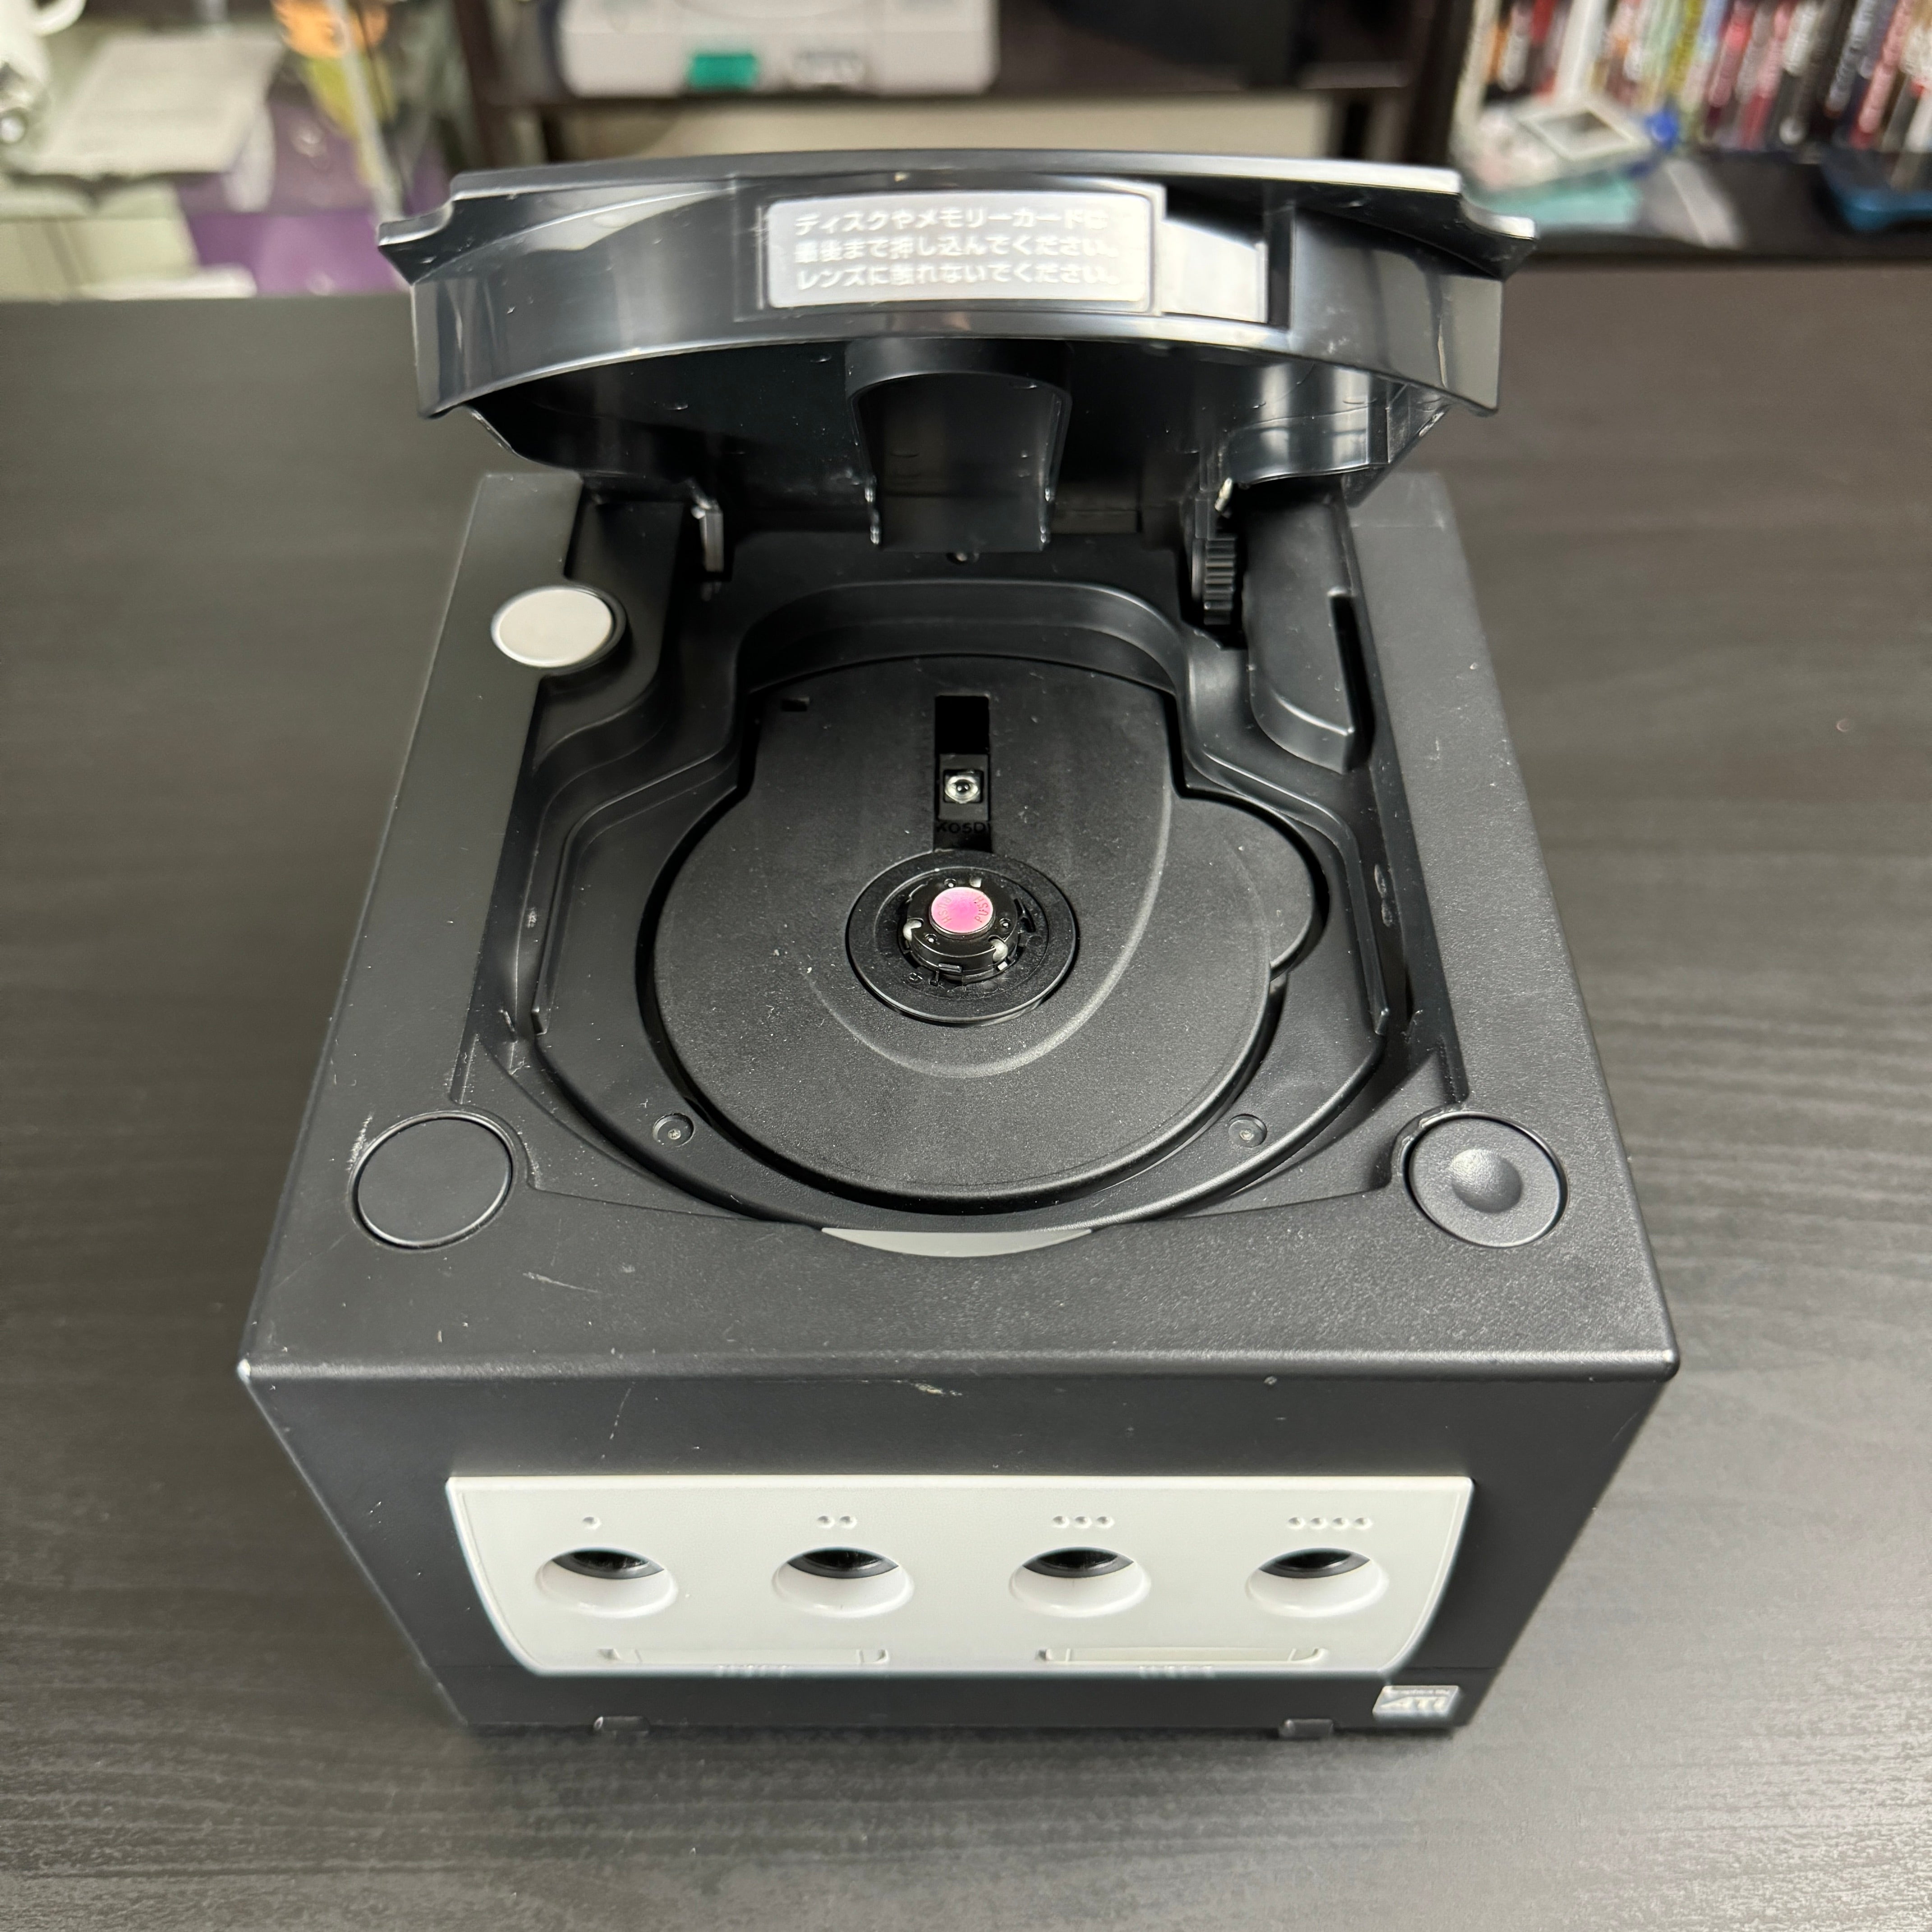 Black Modded GameCube (Original Shell DOL-101)